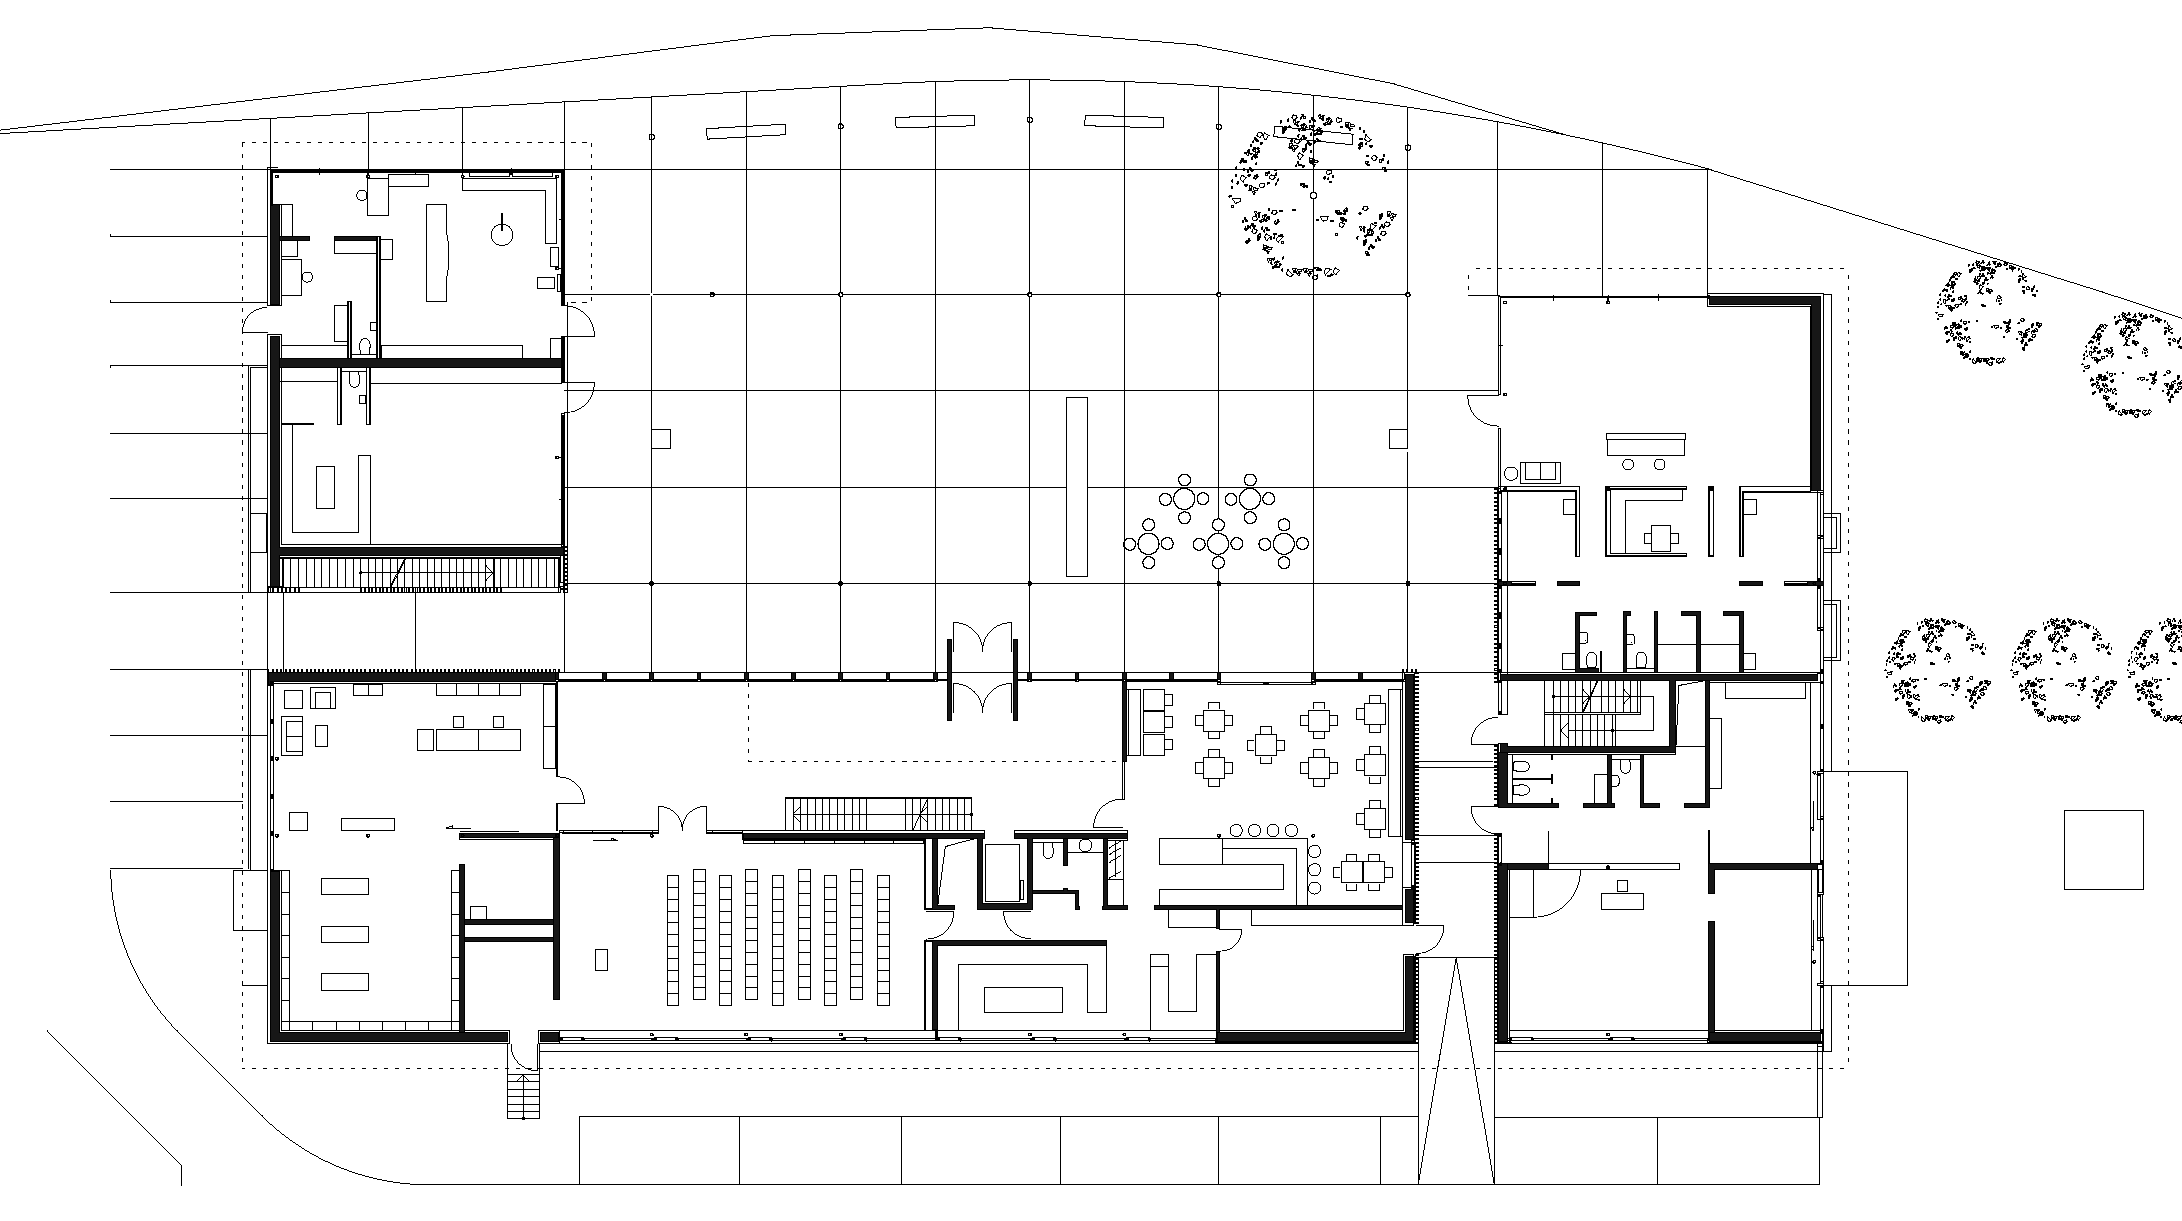 Community Centre, Ludesch | Architekten Hermann Kaufmann ZT GmbH